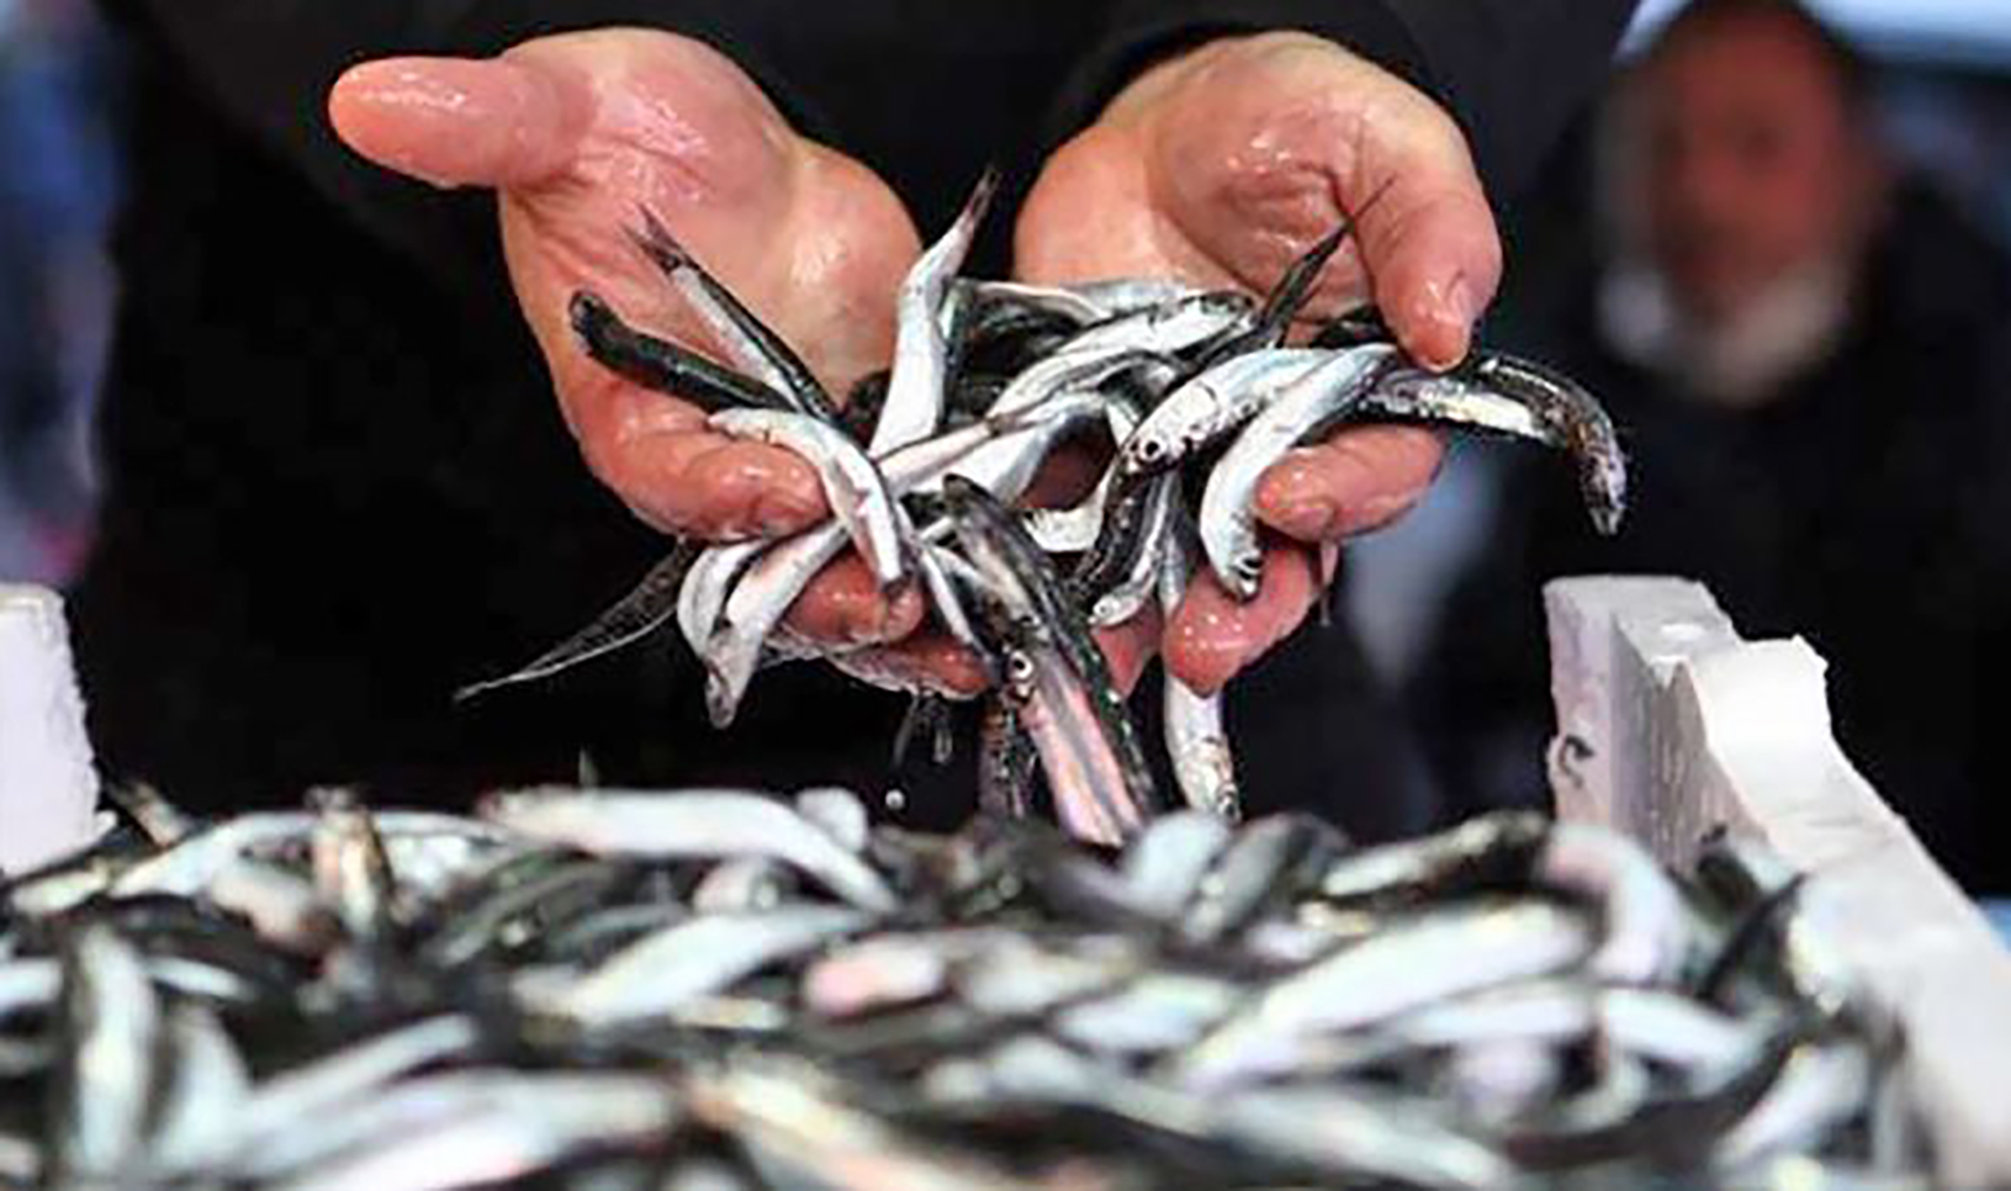 Denizlerde av sezonu 1 Eylül’de başlıyor! Balıkçılar yeni sezona hazırlanıyor: Hamside bolluk bekleniyor